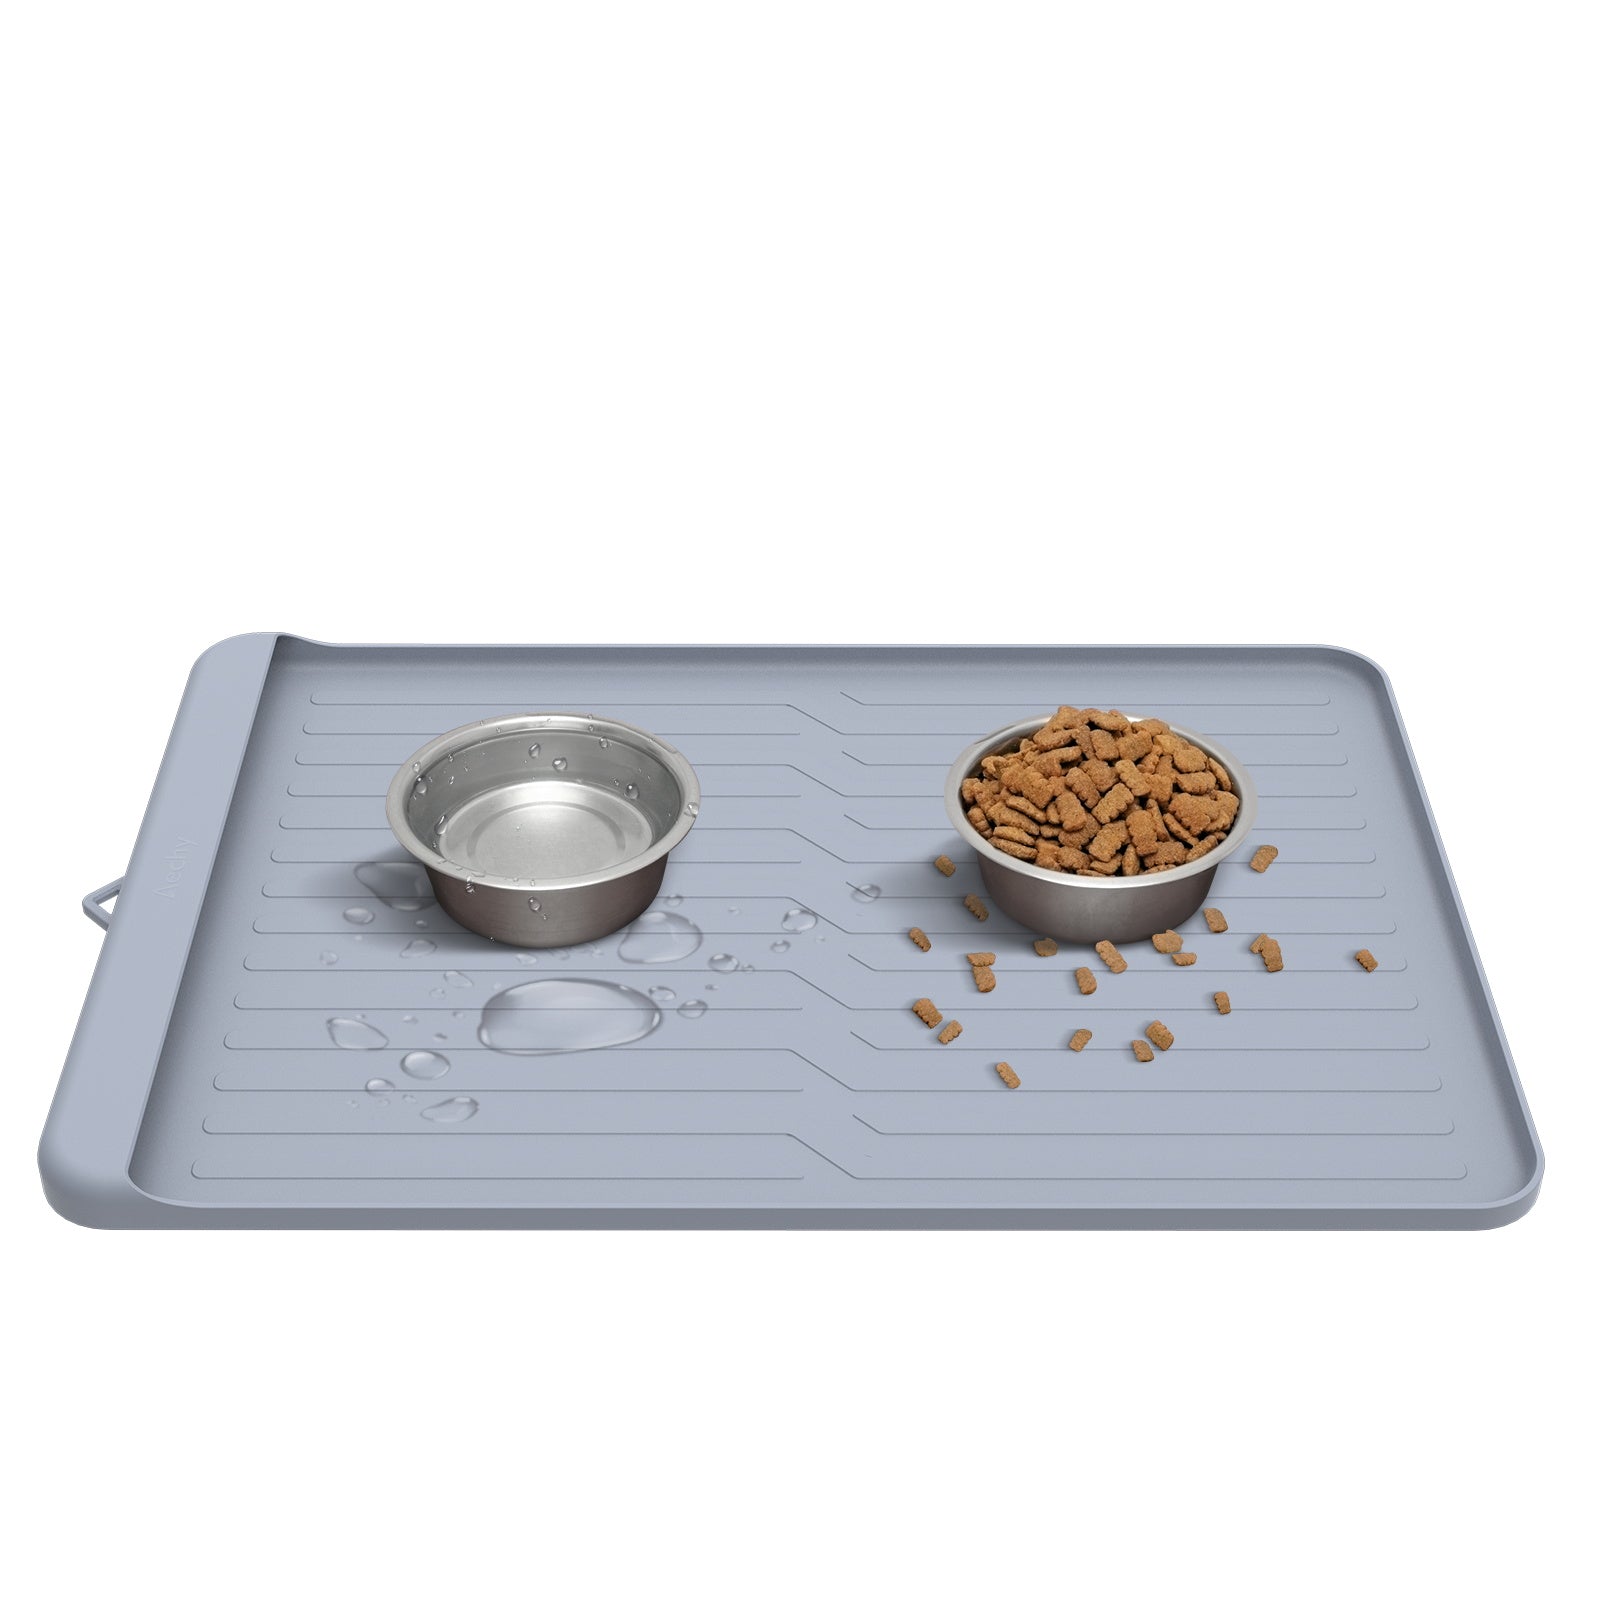 AECHY Silicone Pet Feeding Mat Non-Slip Anti-Bite 36 x 24